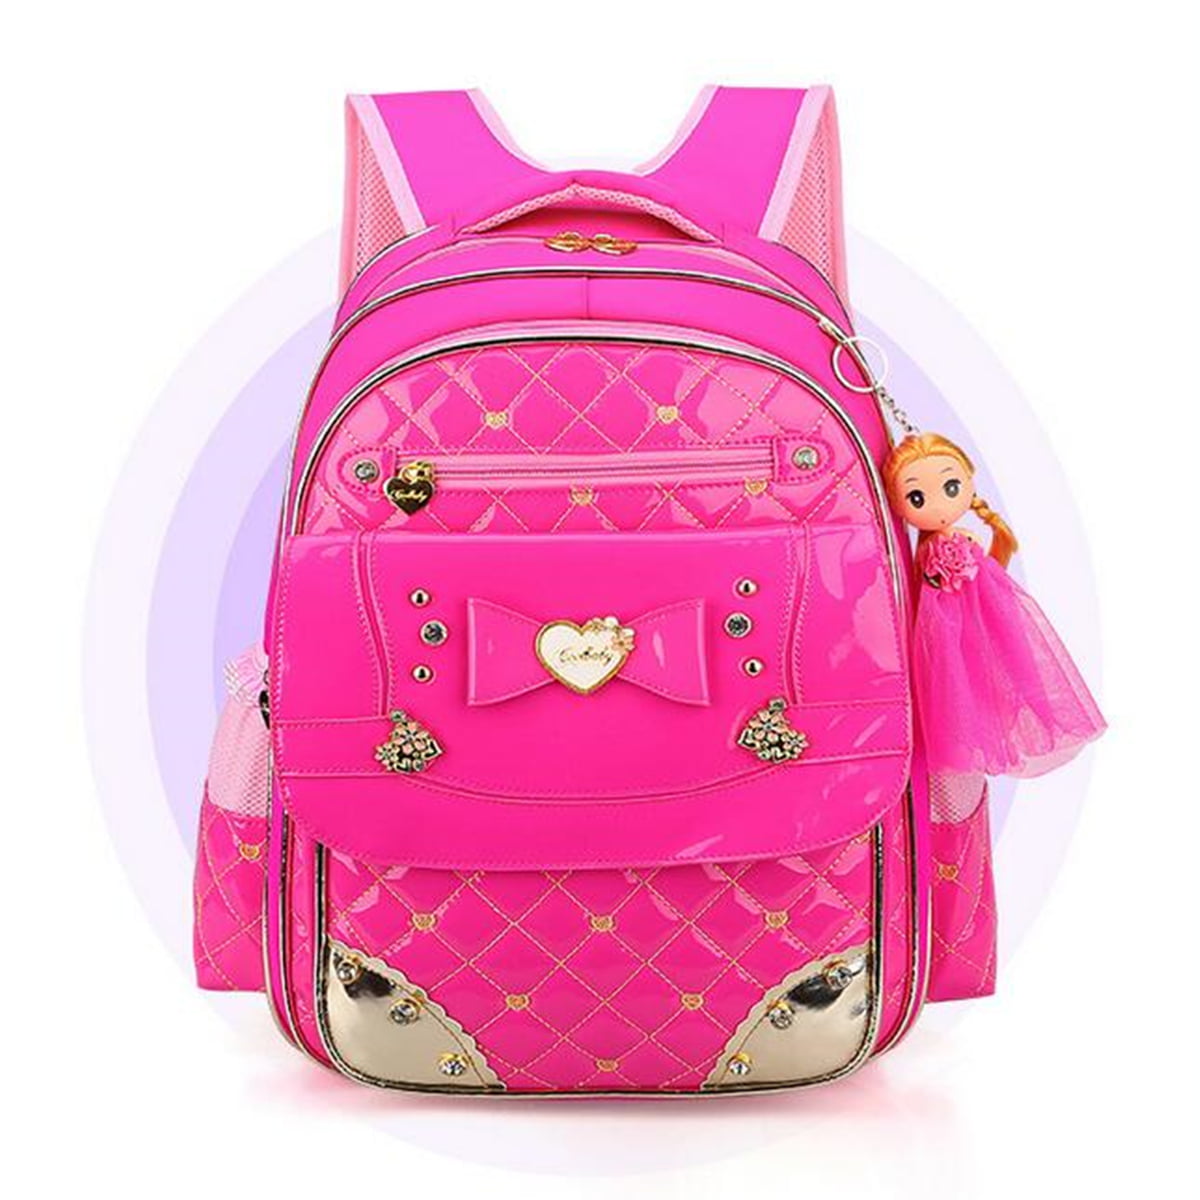 V.I.P. - Chic Kids Waterproof Backpack for Girls Children Primary ...